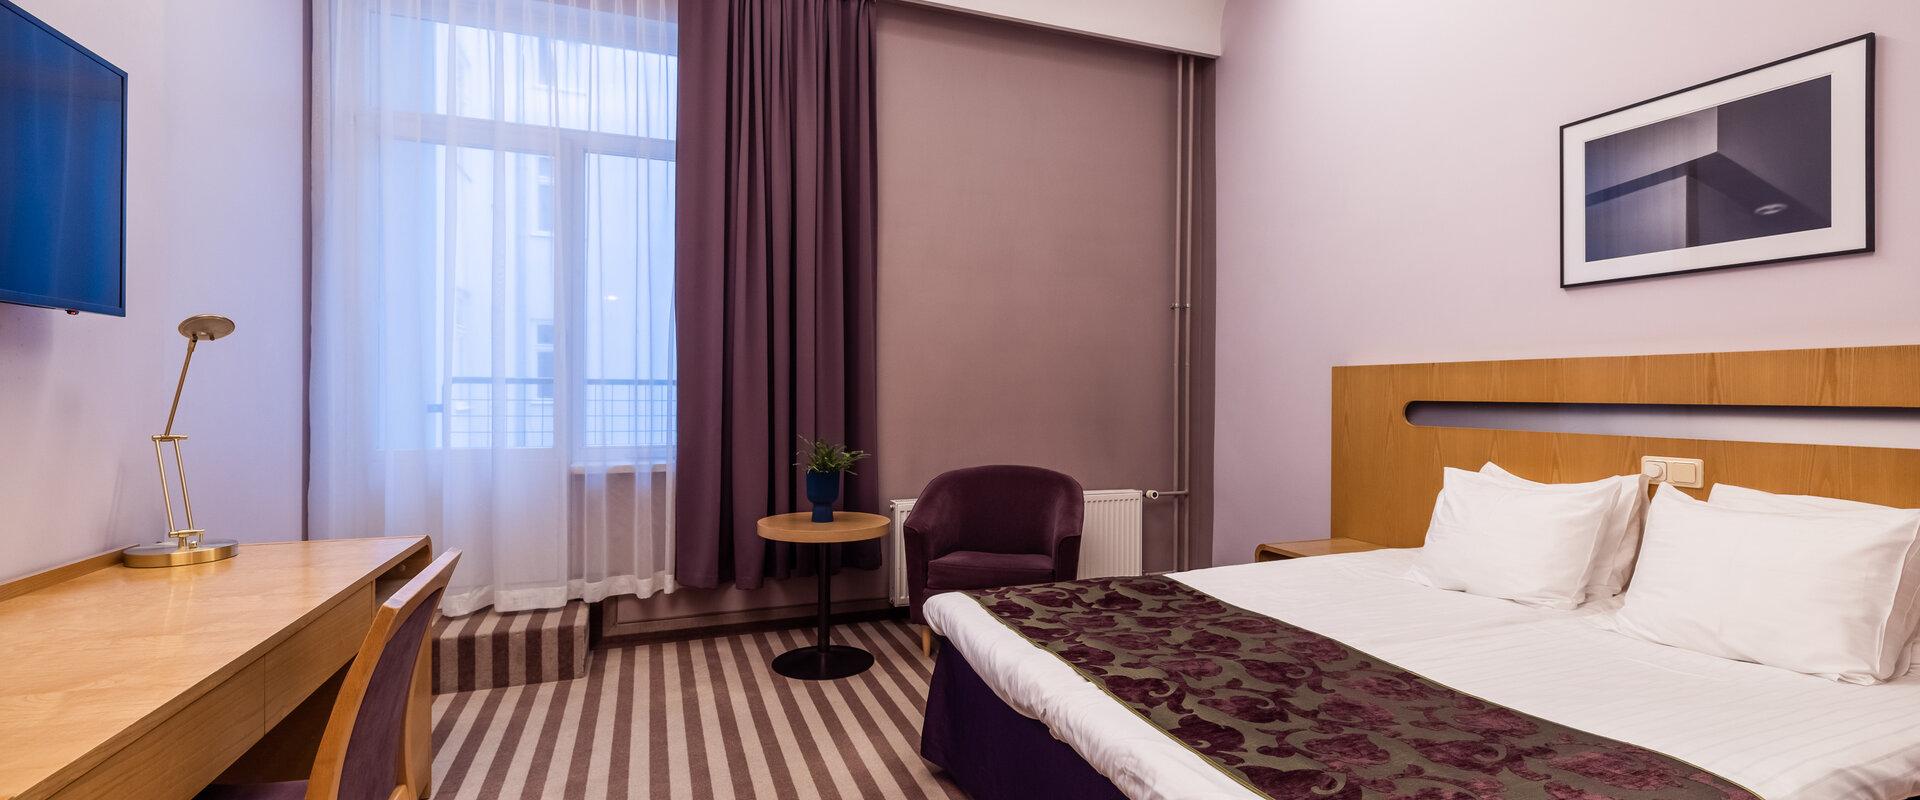 Hotelli Sohon Standard M -huone, jossa on parisänky